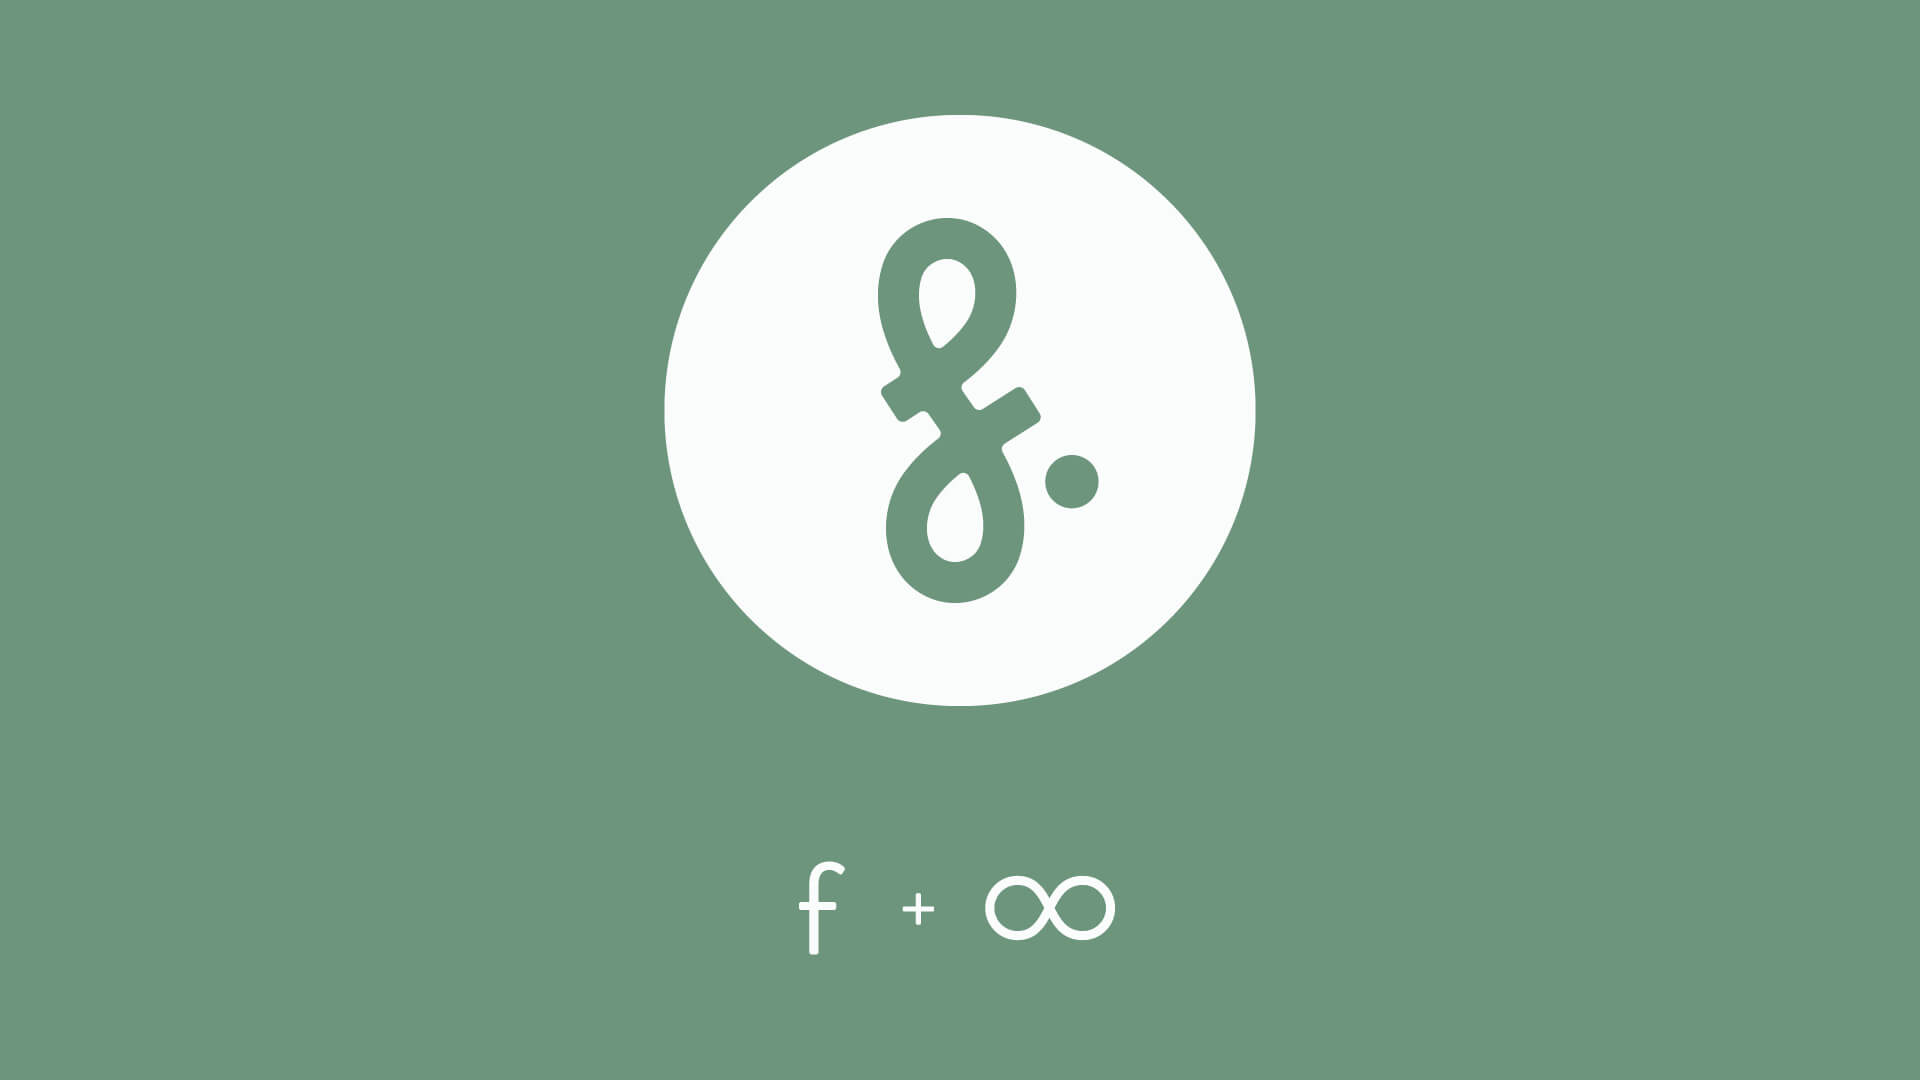 finfinityfocused-2